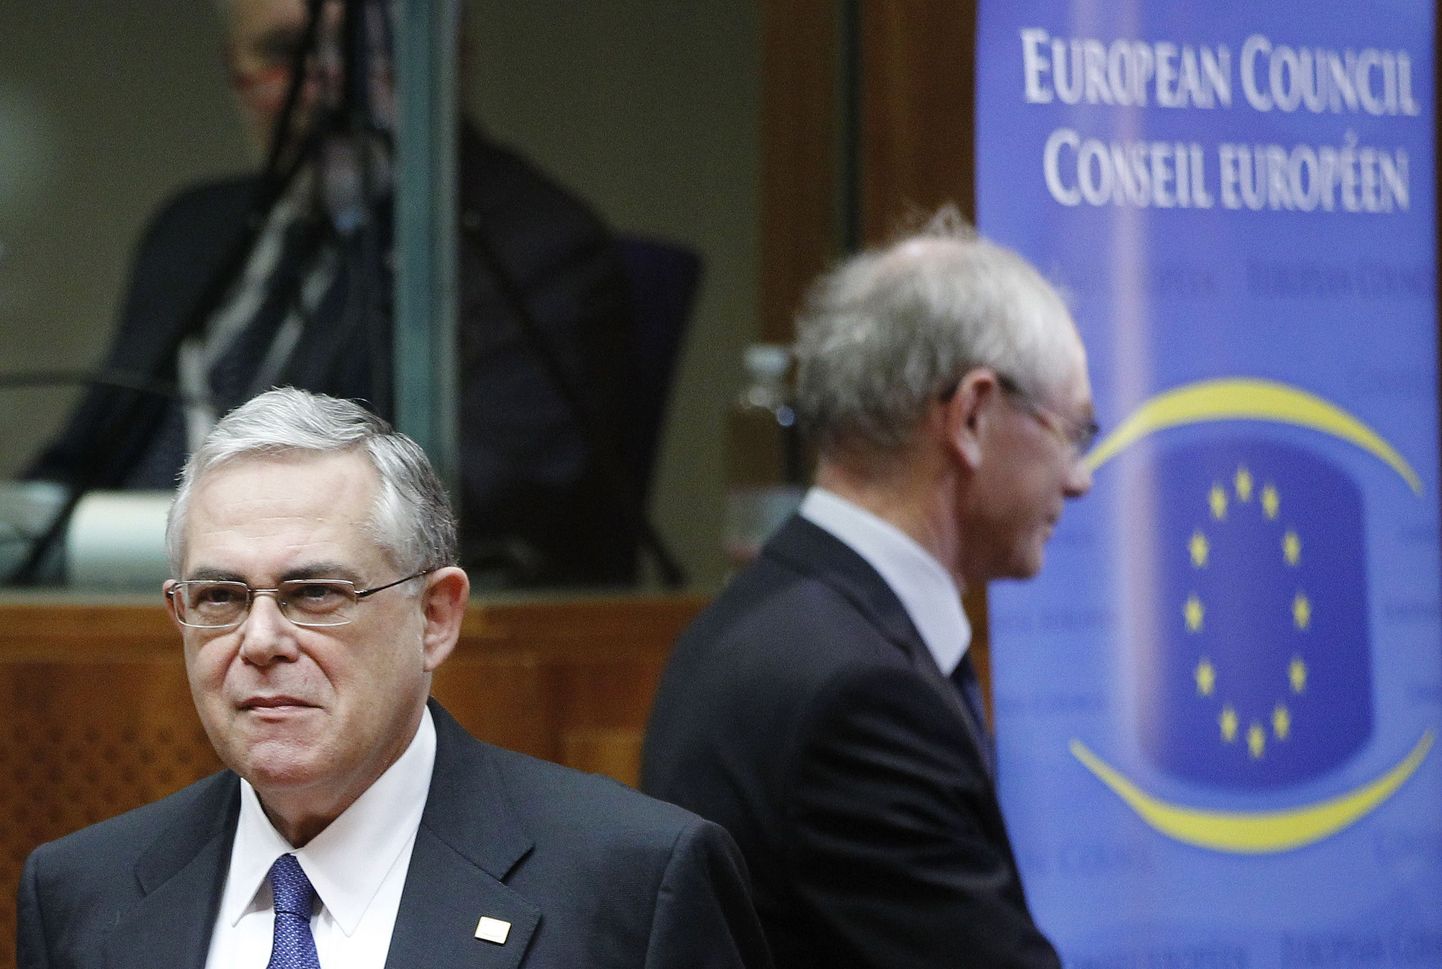 Kreeka peaminister Lucas Papademos saabumas ELi juhtide kohtumisele.